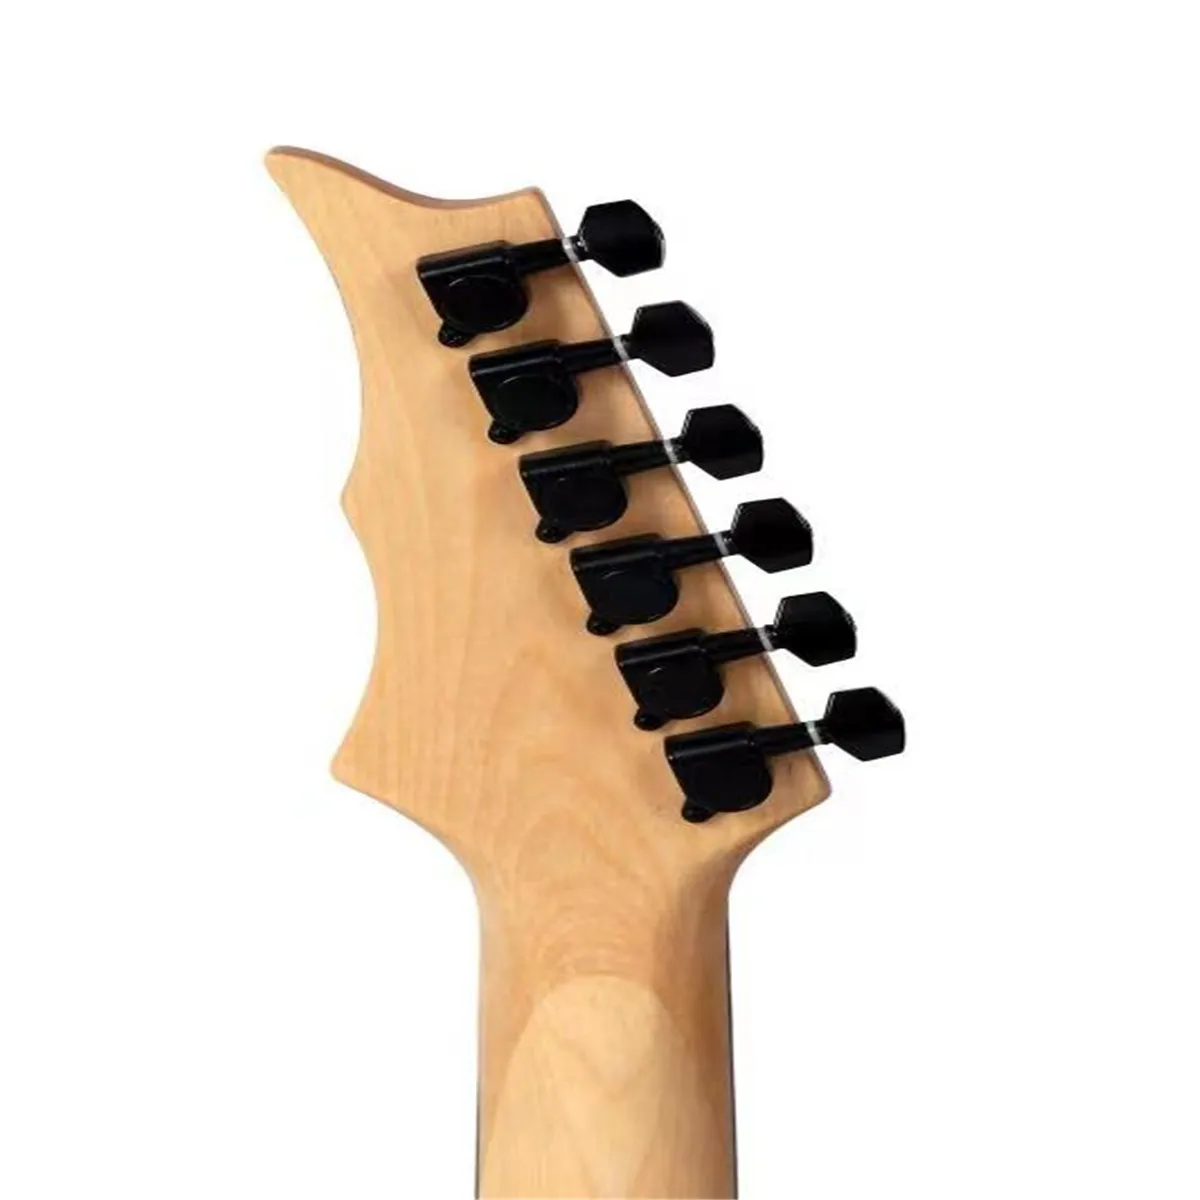 6-saitige E-Gitarre im chinesischen Stil, schwarz glänzende schwarze Metallbeschläge, Halsrücken, matt